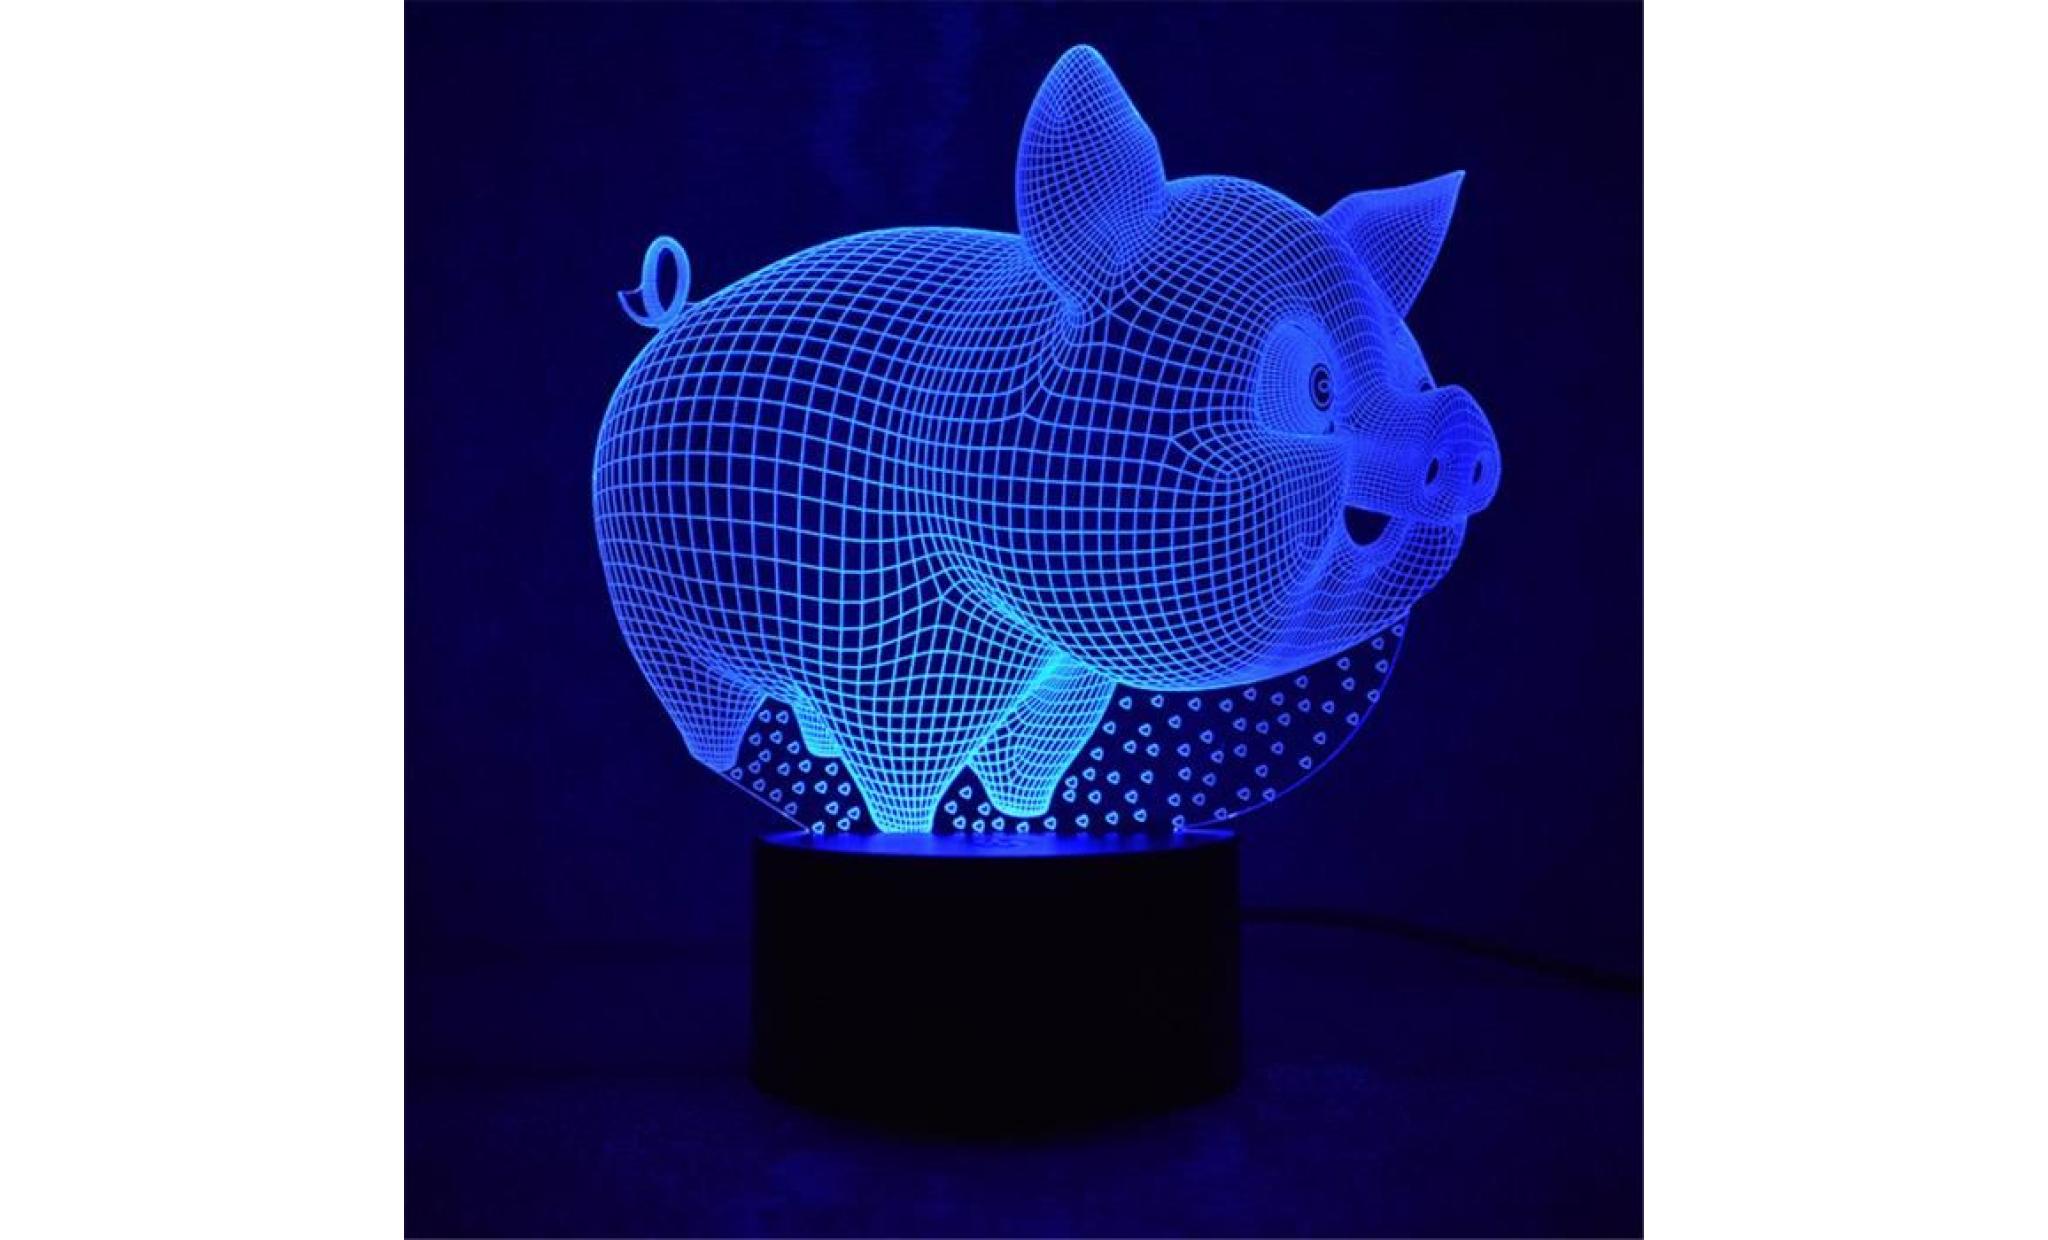 fat pig led 3d night light lampes 3d illusion optique 7 couleurs pour la maison yt03 pas cher